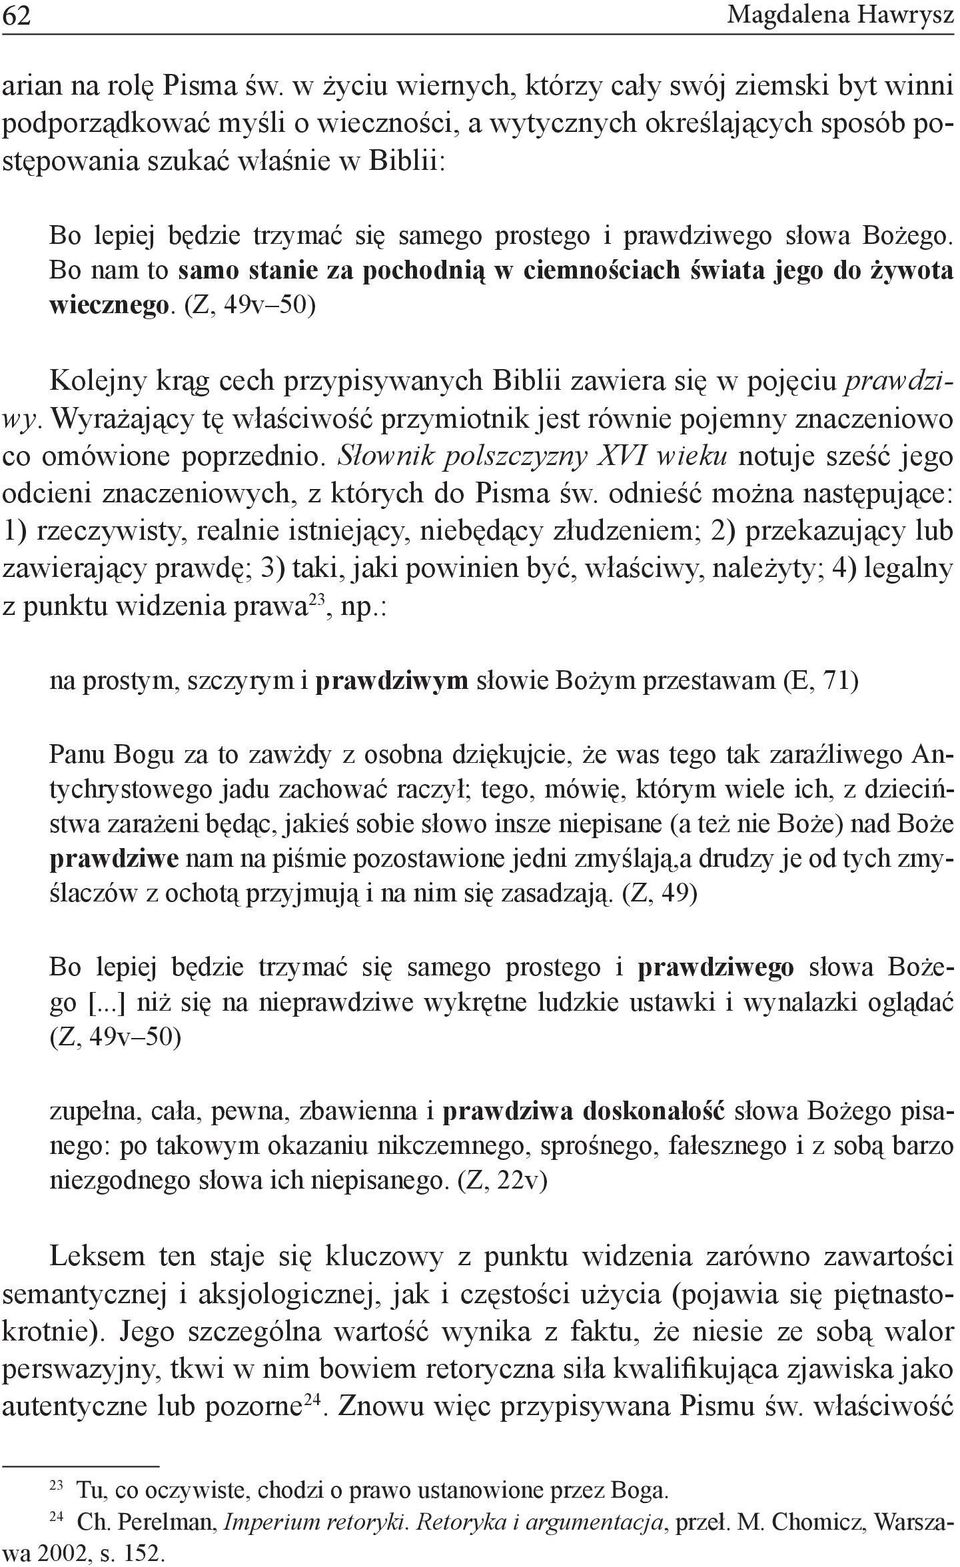 Ideologia braci polskich a ich język. Zasada sola Scriptura w twórczości  Marcina Czechowica - PDF Free Download